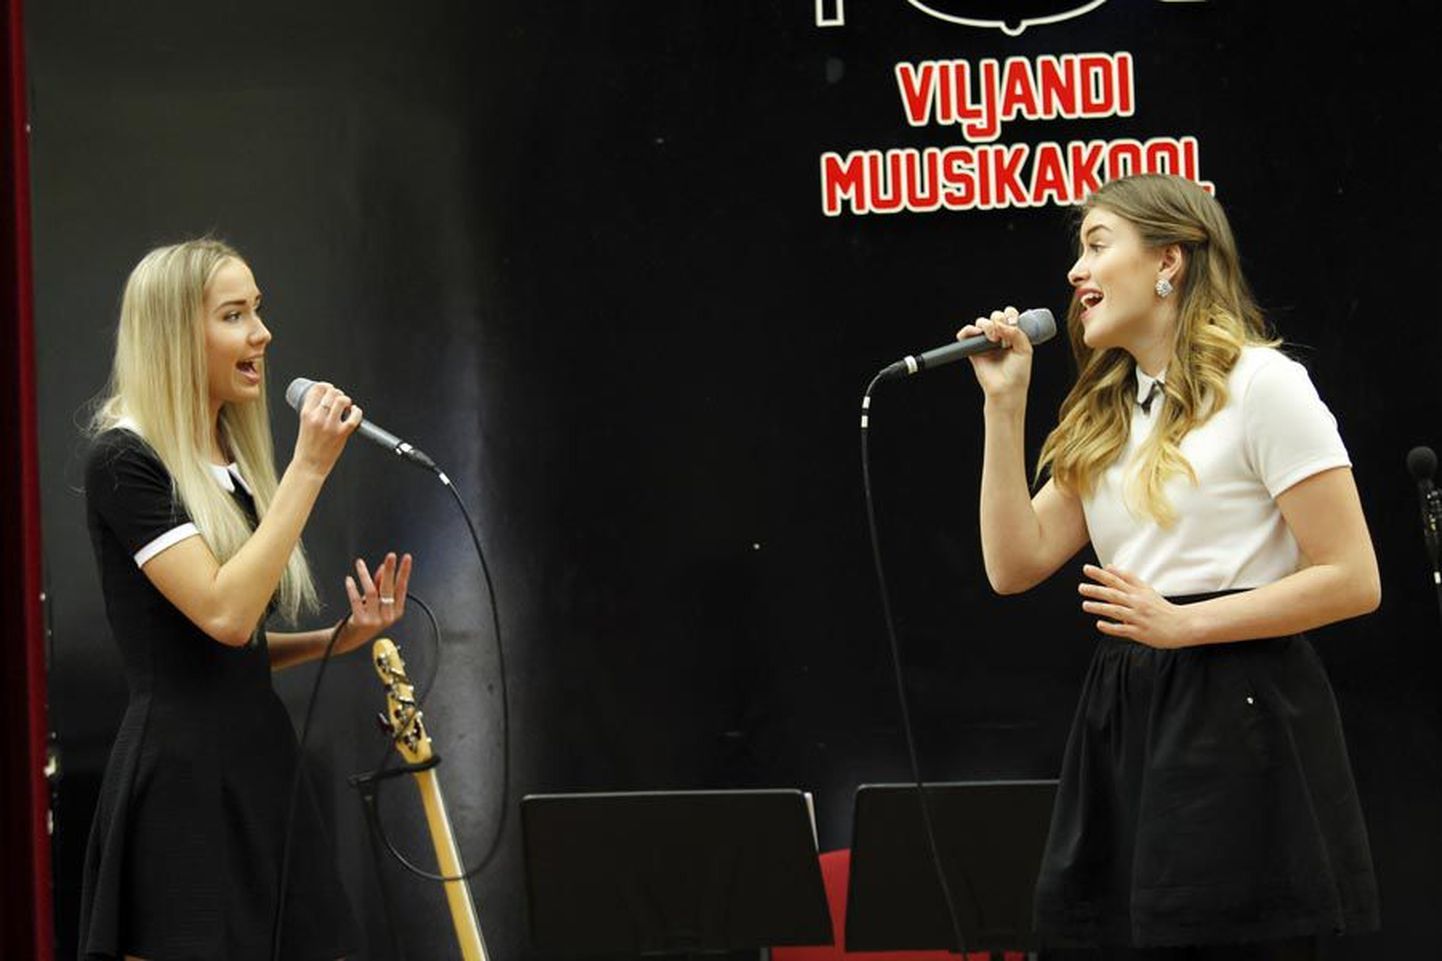 X–XII klassi vanuserühmas kolmanda koha saanud Viljandi muusikakooli duett Merili Otsma (vasakul) ja Eleryn Tiit said eripreemia ka parima Viljandi duetina.